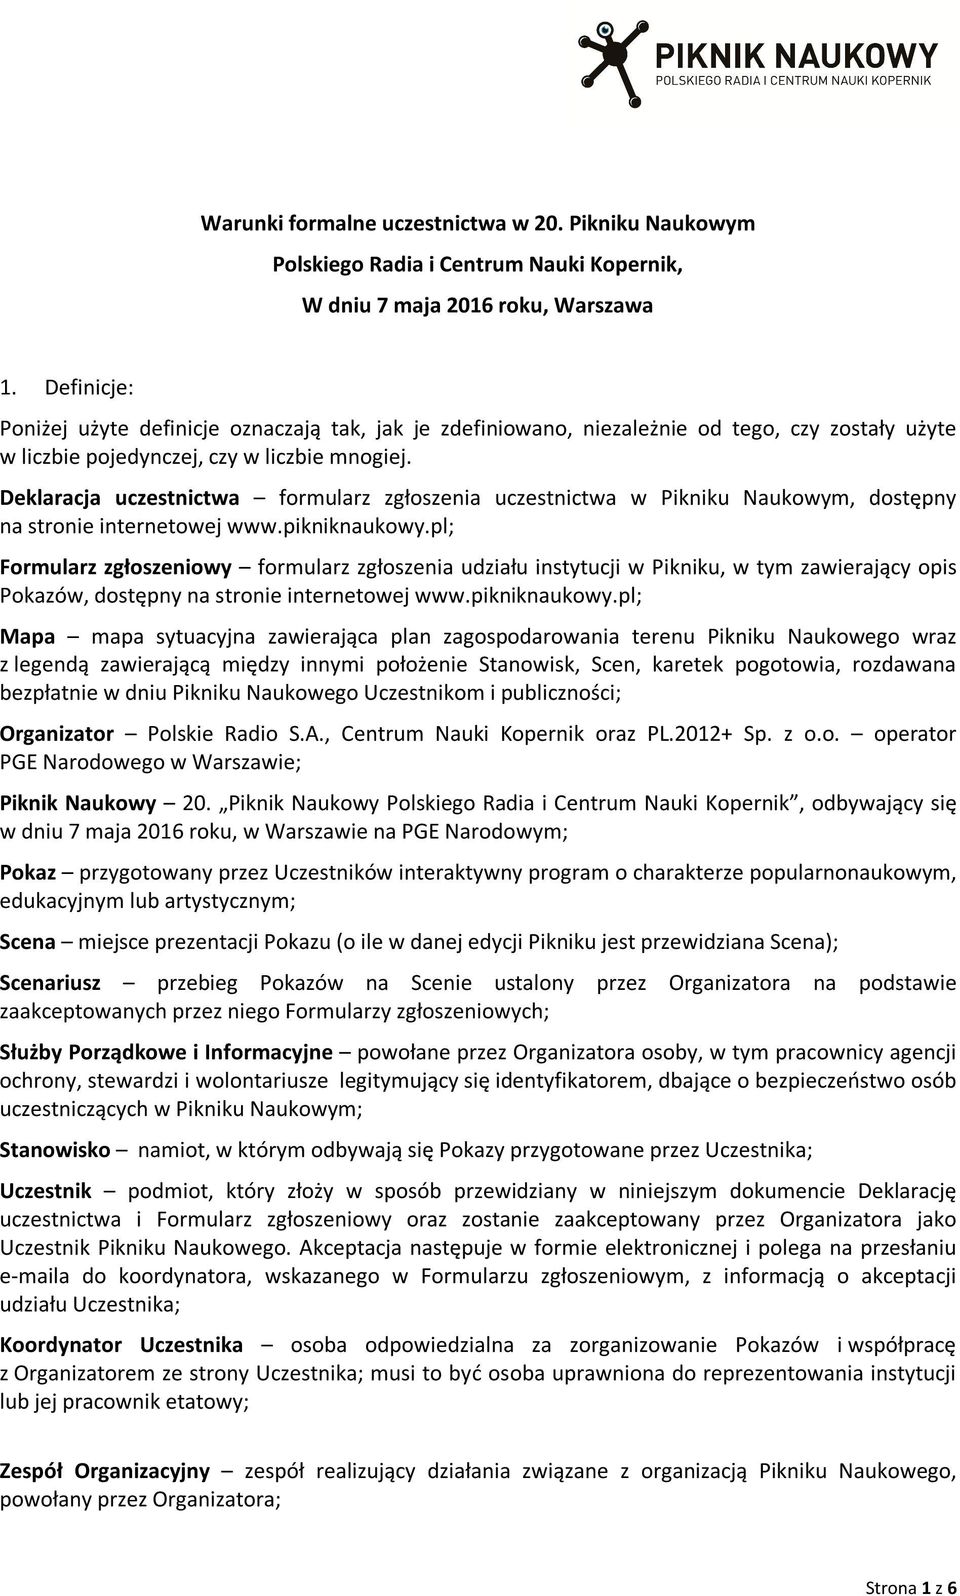 Deklaracja uczestnictwa formularz zgłoszenia uczestnictwa w Pikniku Naukowym, dostępny na stronie internetowej www.pikniknaukowy.